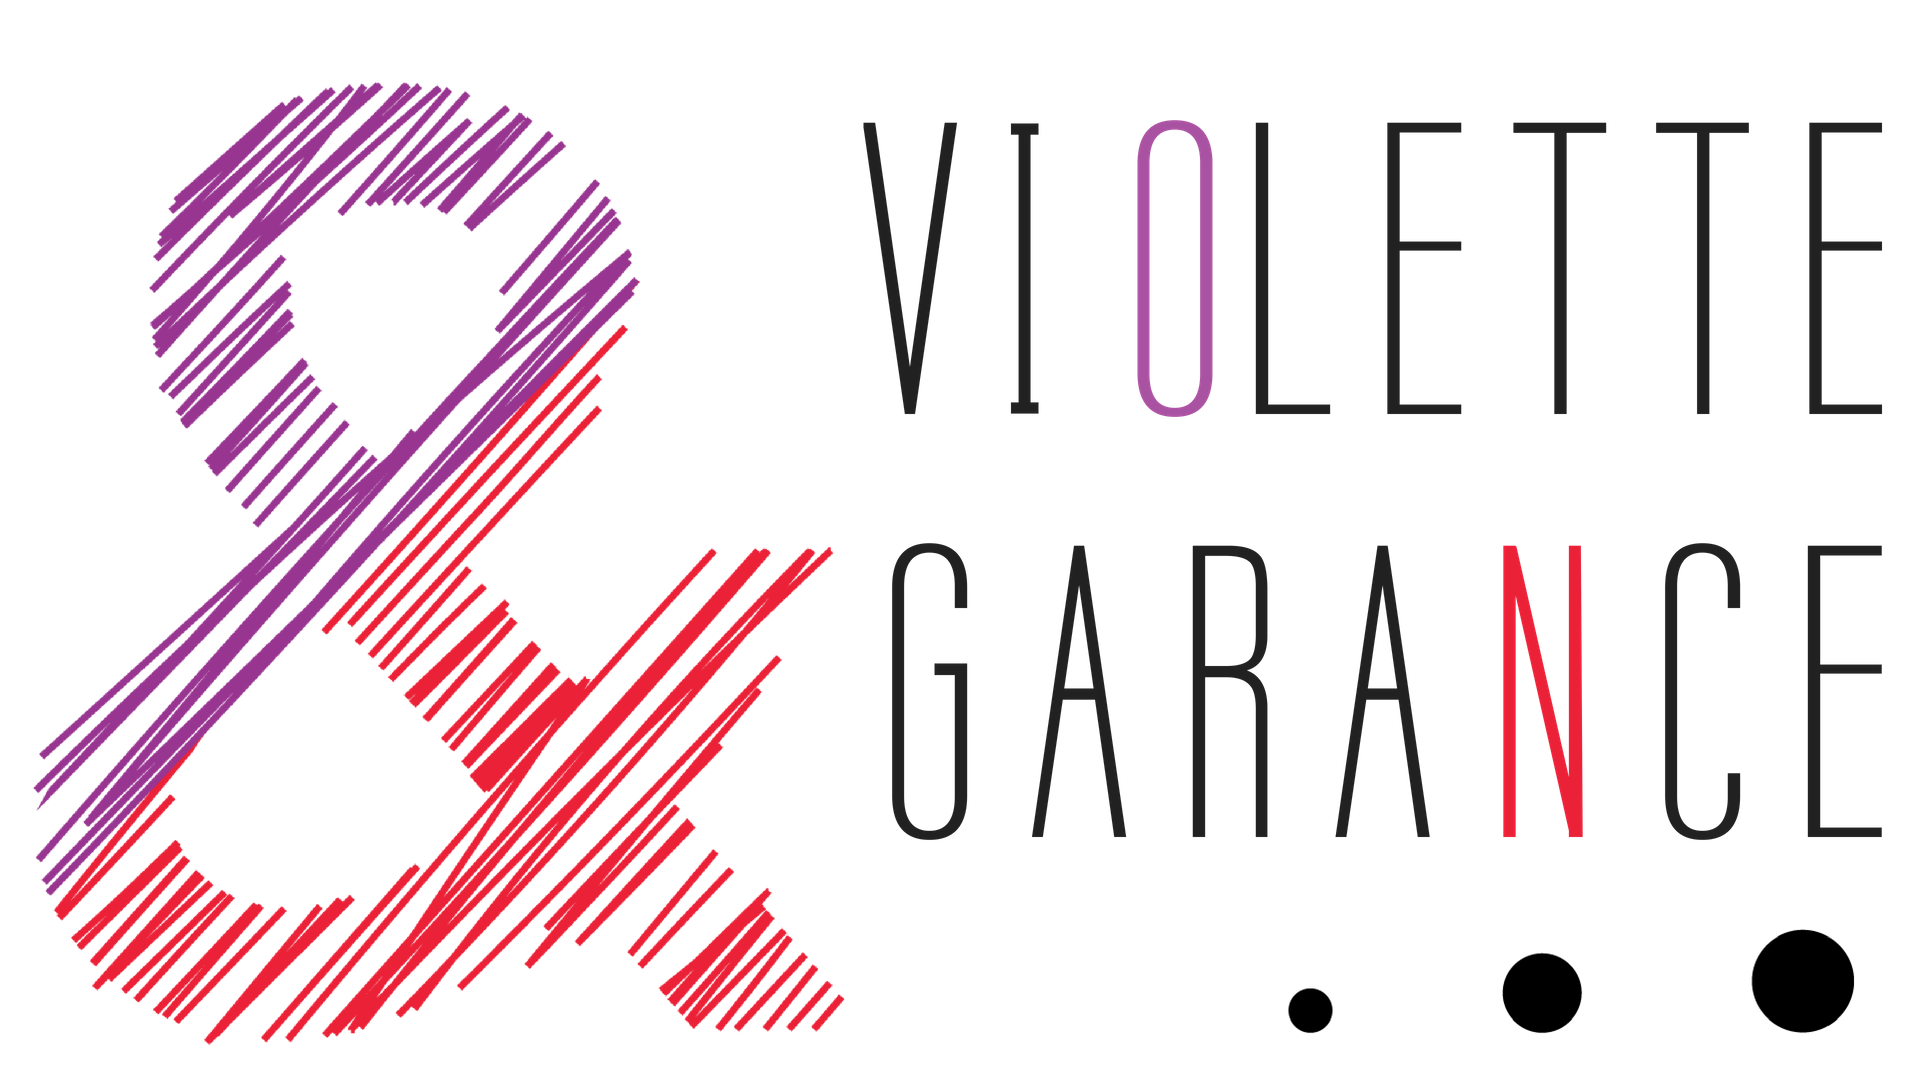 Violette et Garance